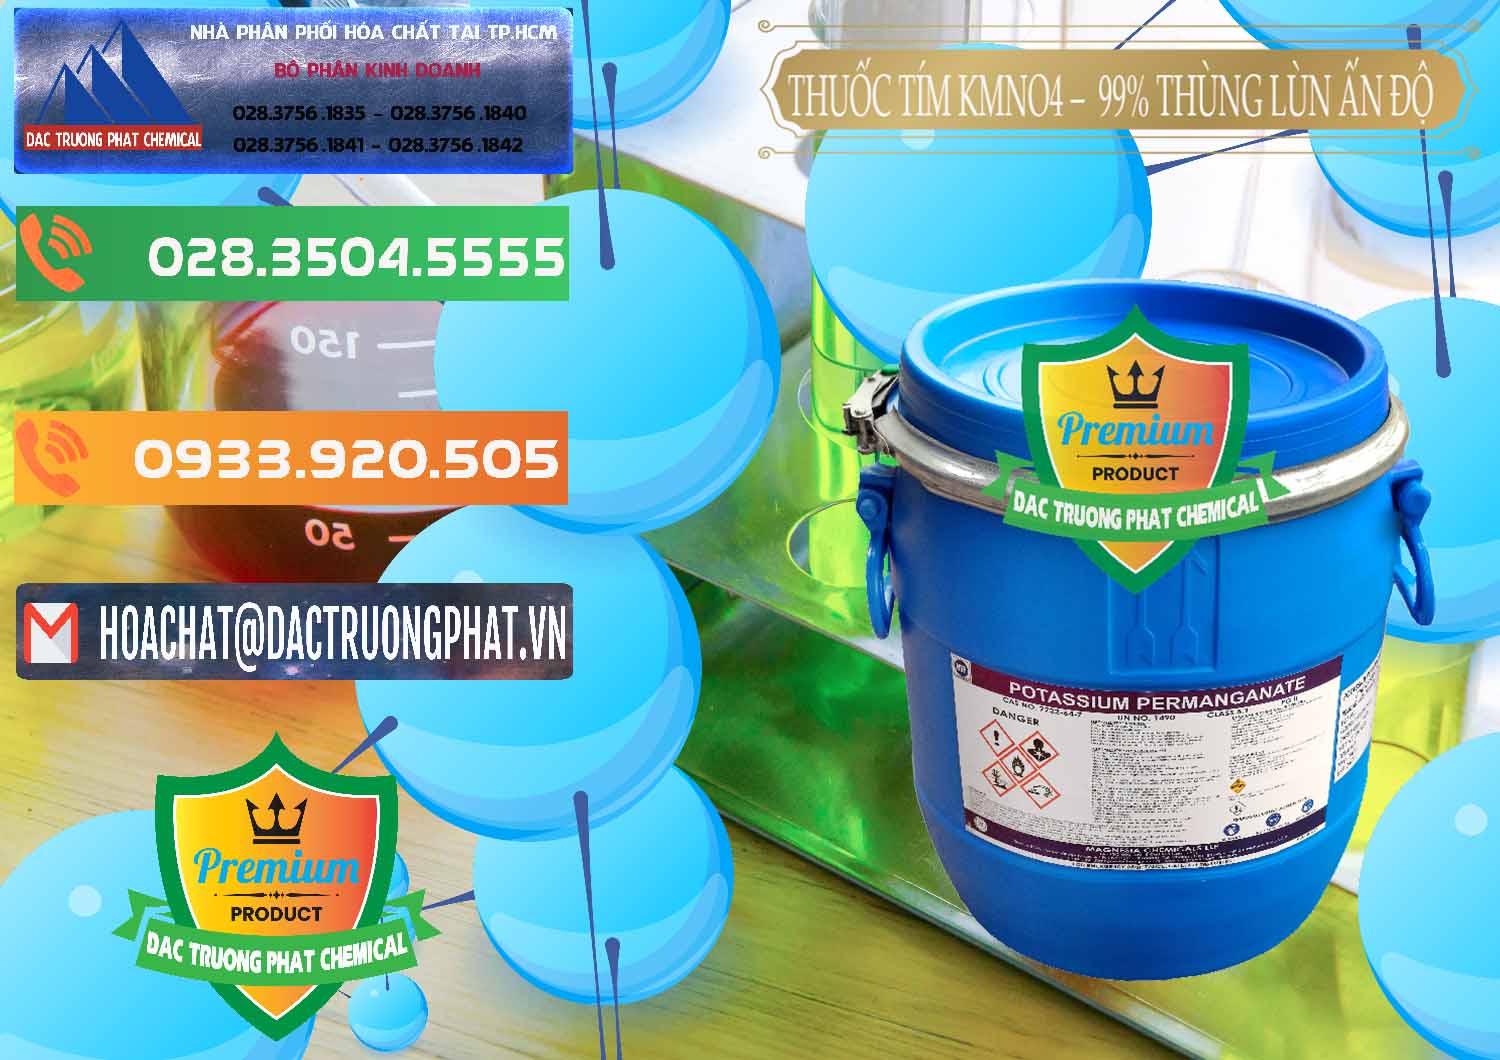 Nơi chuyên bán - phân phối Thuốc Tím - KMNO4 Thùng Lùn 99% Magnesia Chemicals Ấn Độ India - 0165 - Cty chuyên cung ứng & phân phối hóa chất tại TP.HCM - hoachatxulynuoc.com.vn